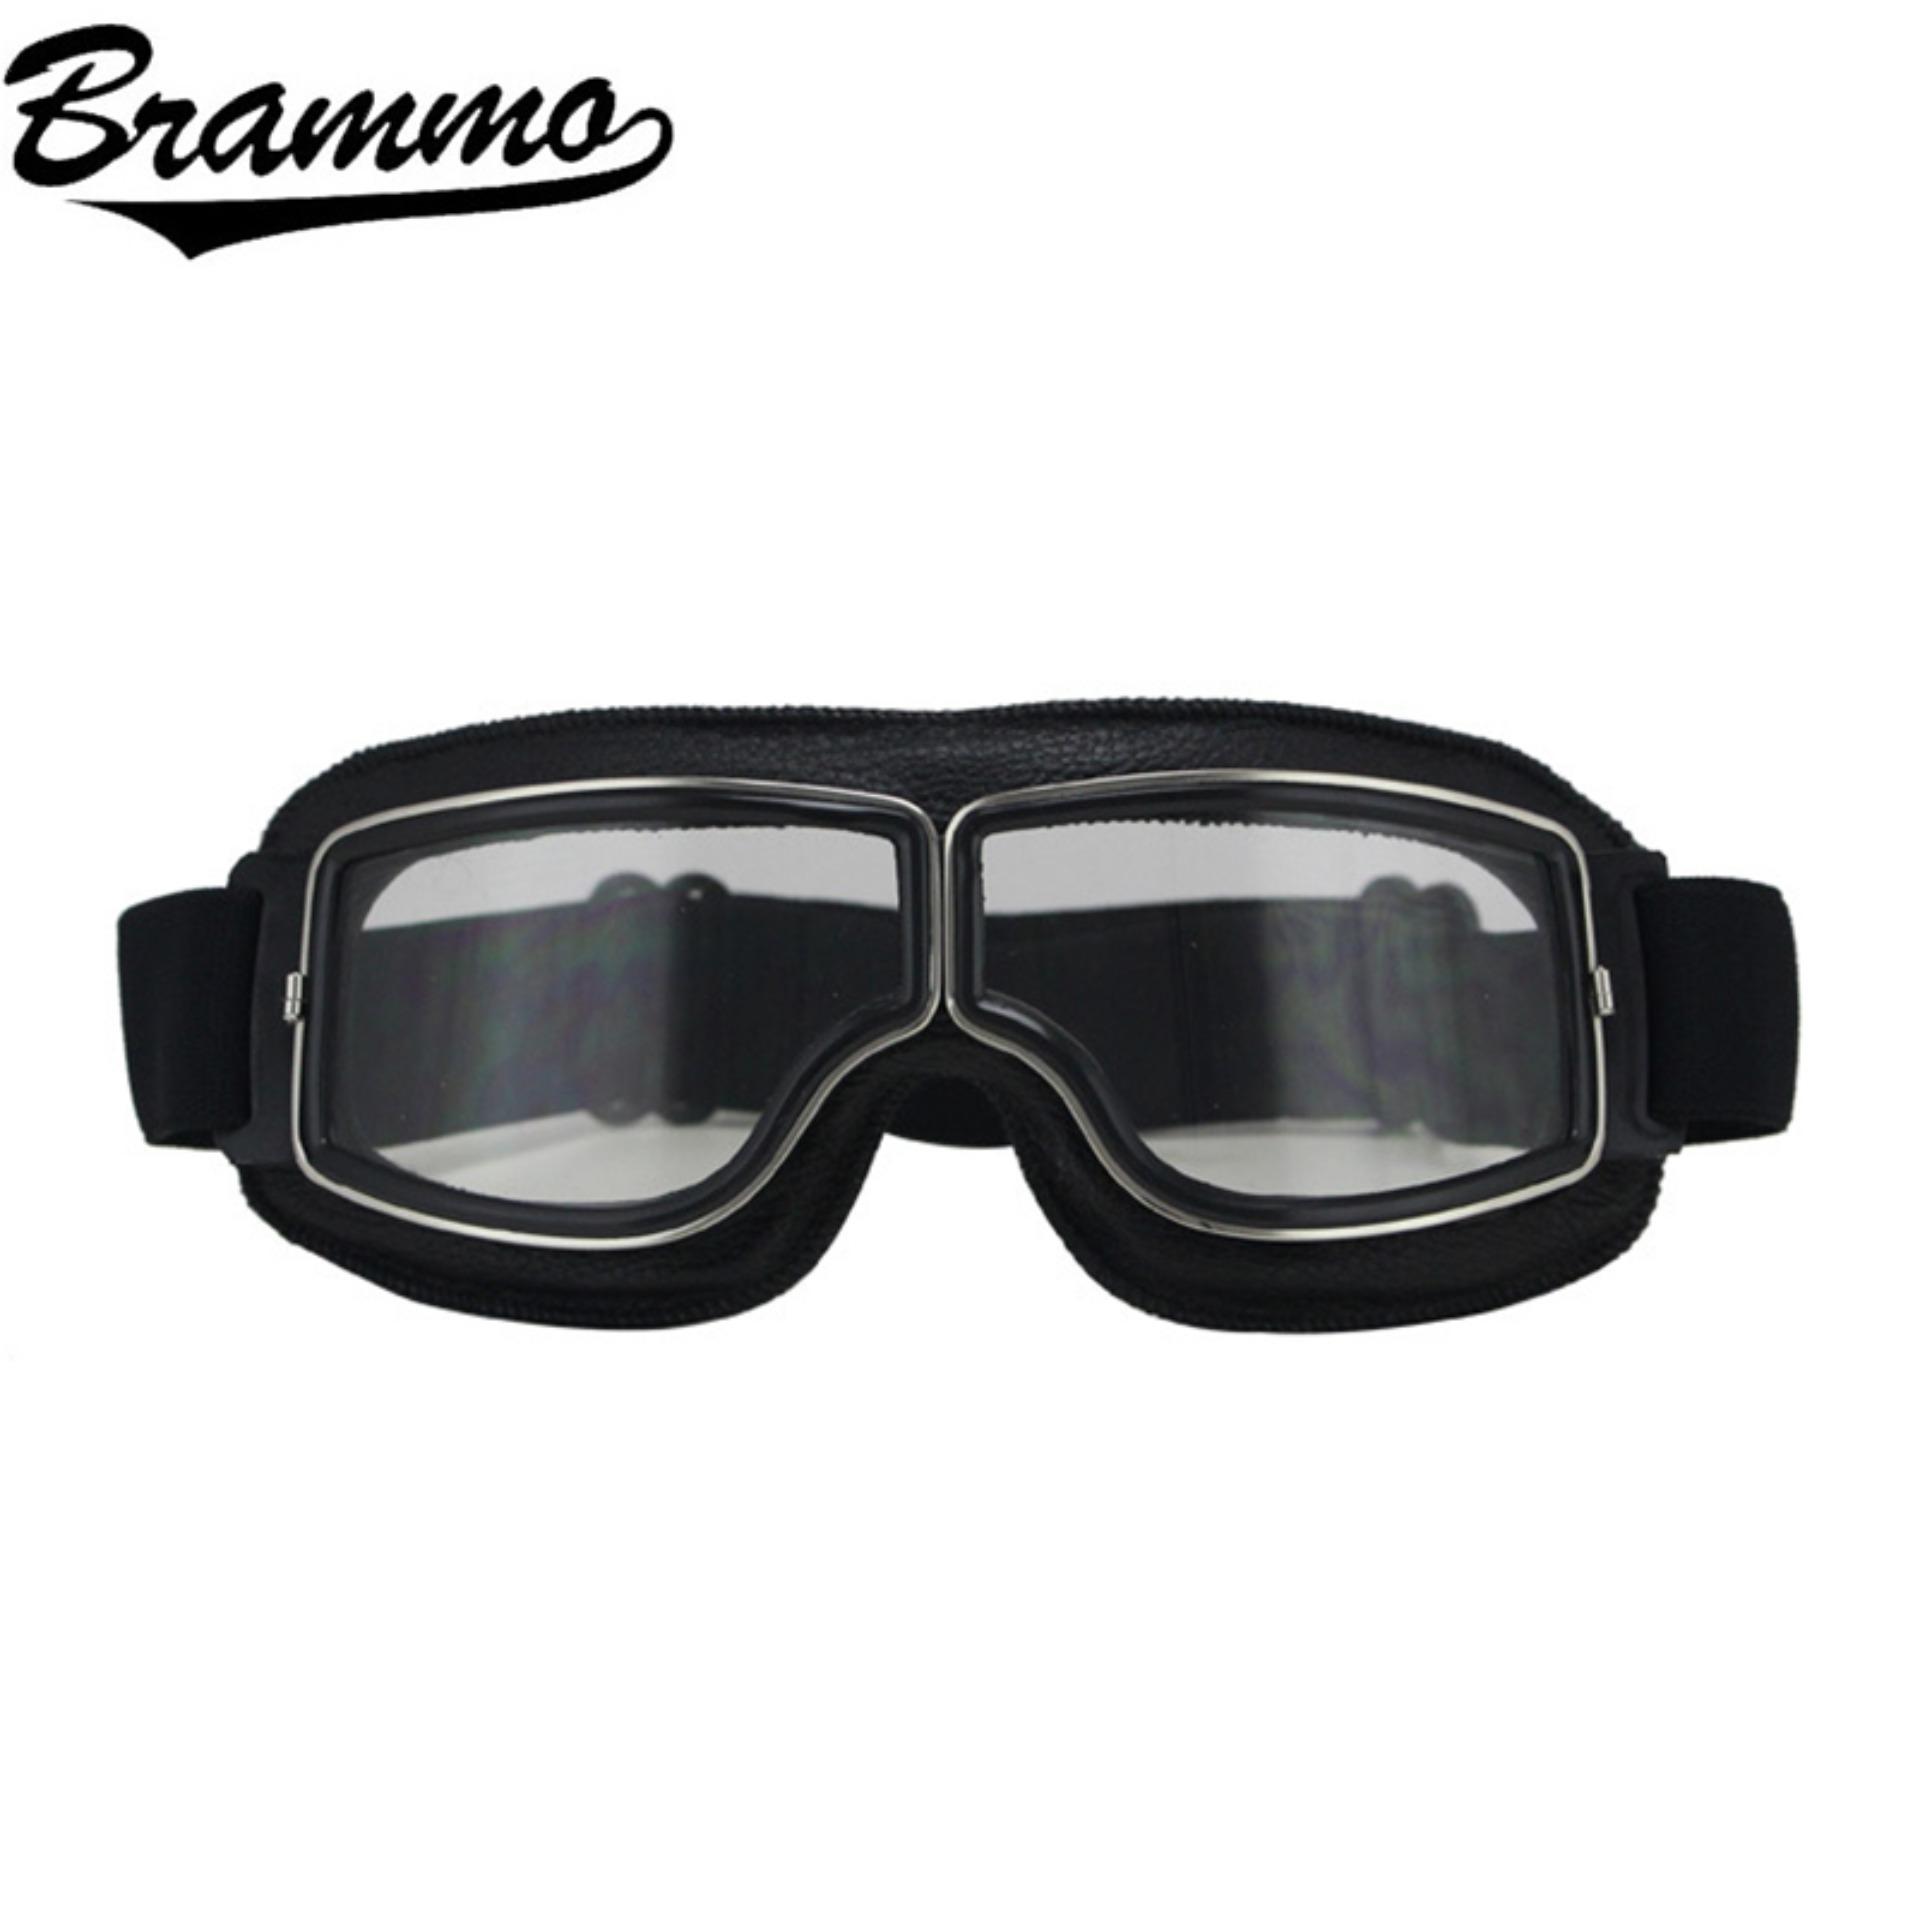 BRAMMO motorcycle glasses แว่นตากันแดด,​ ป้องกันรังสีอัลตราไวโอเลตและป้องกันฝุ่น